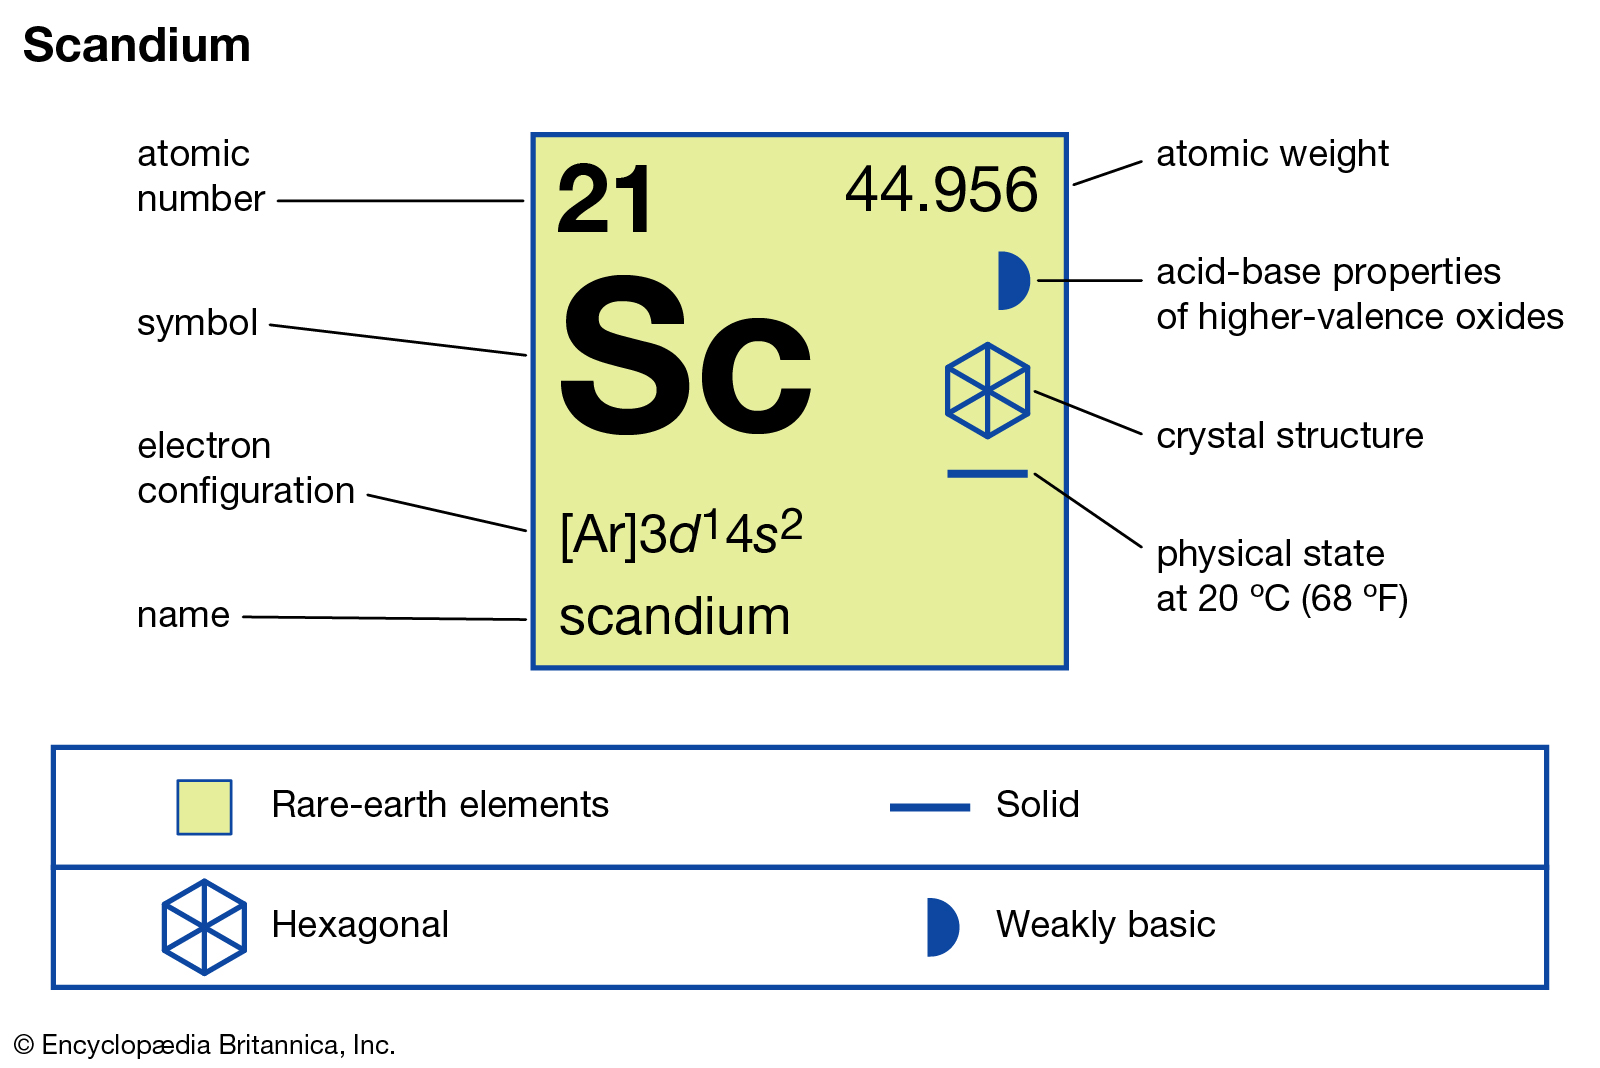 Sự thật thú vị về Scandium | Các nguyên tố hóa học